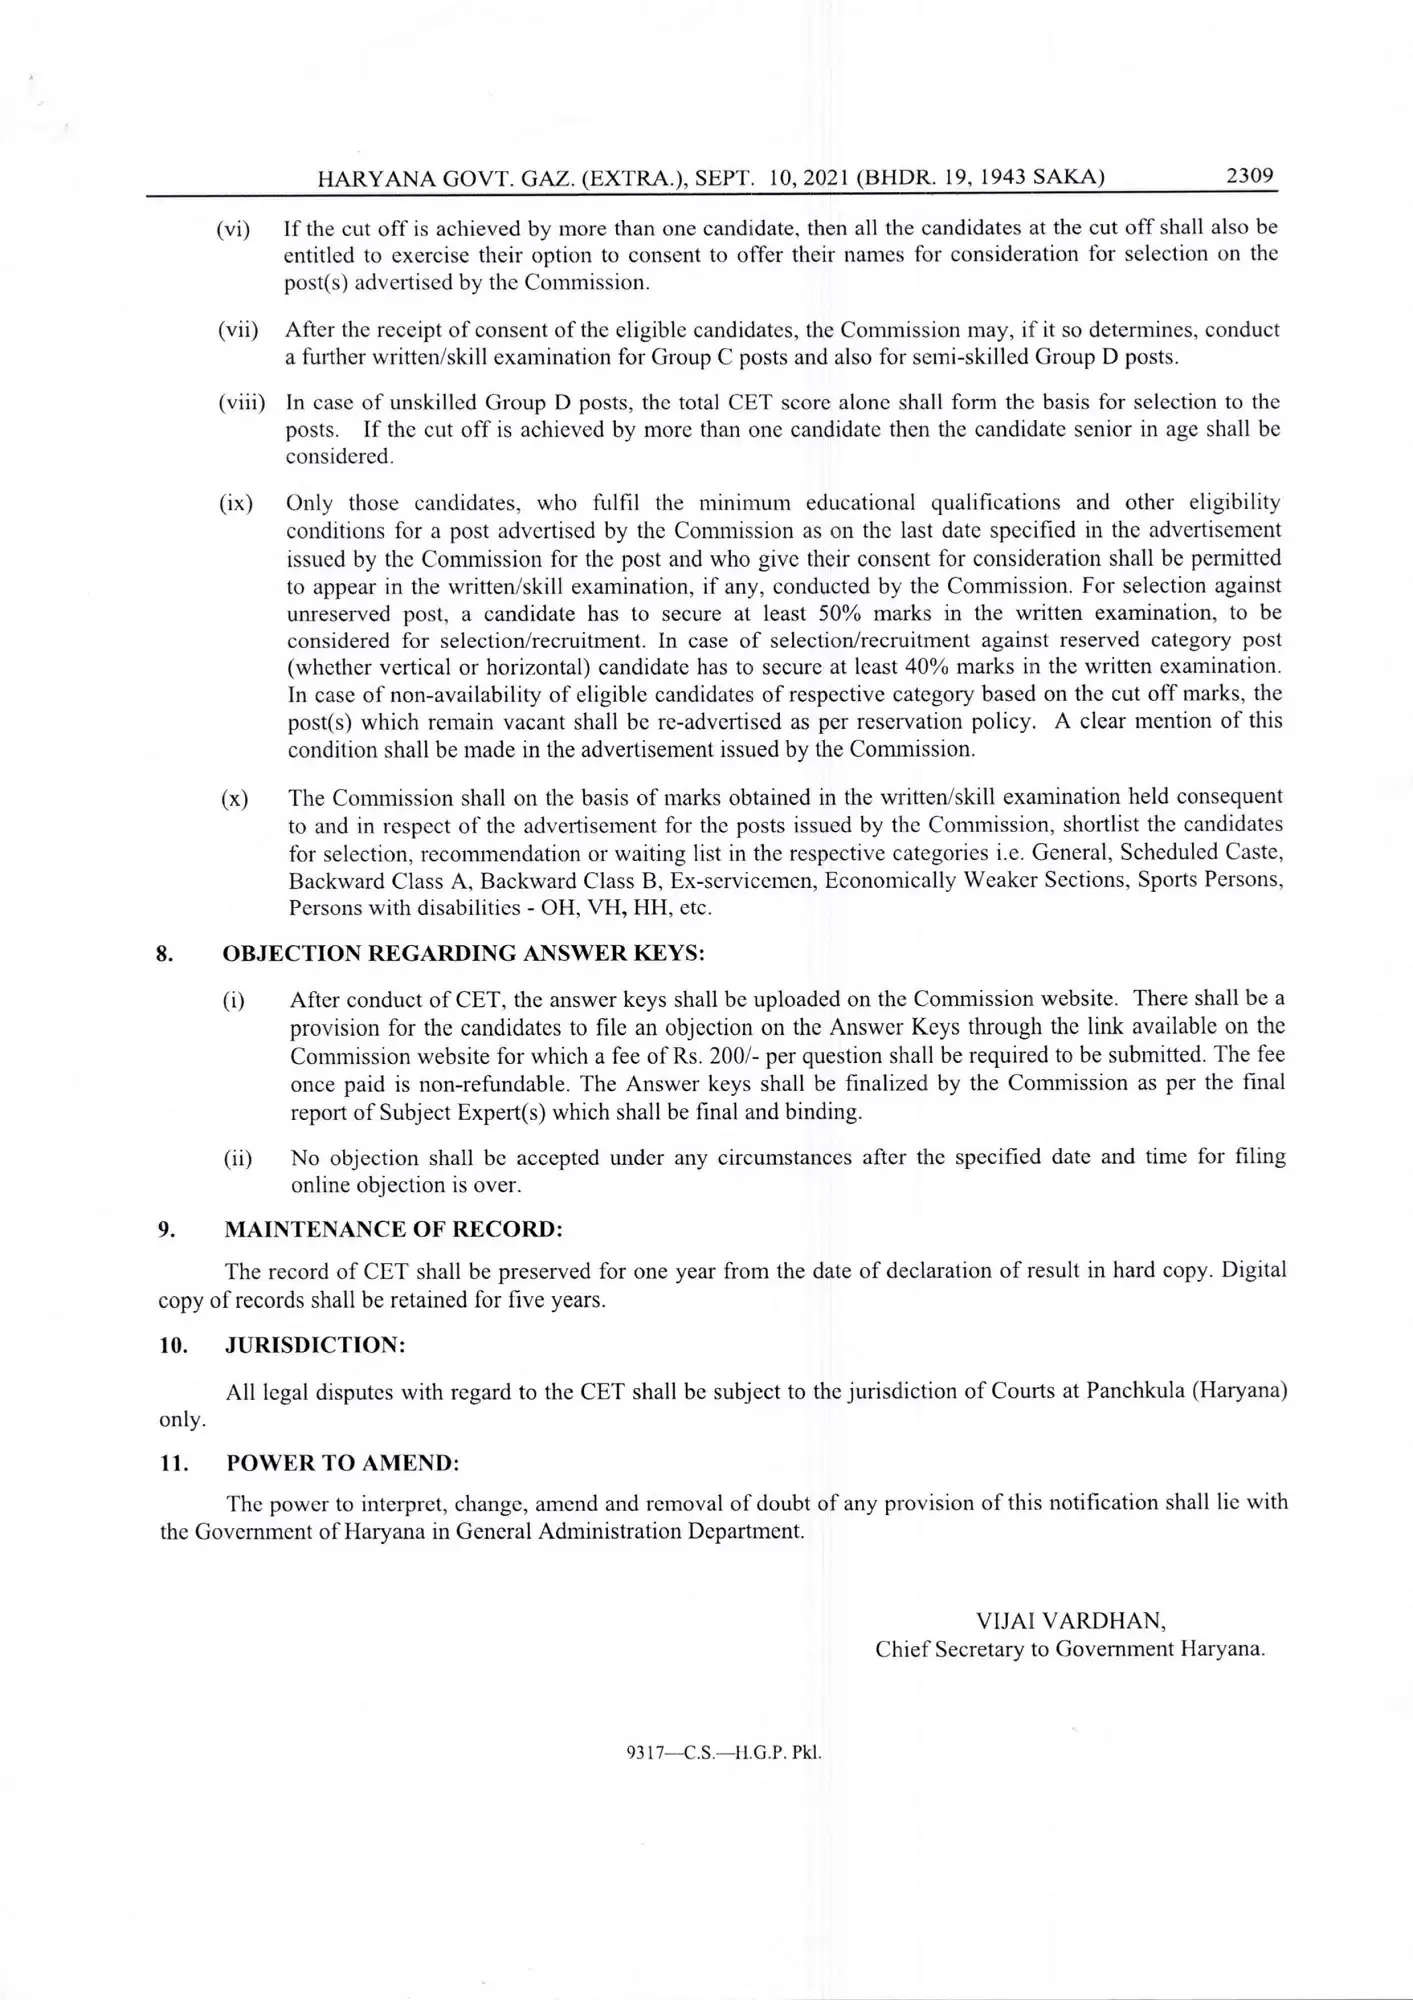 हरियाणा सरकार ने ग्रुप-सी व डी की सीईटी परीक्षा के लिए जारी किया नोटिस, यहां देखें